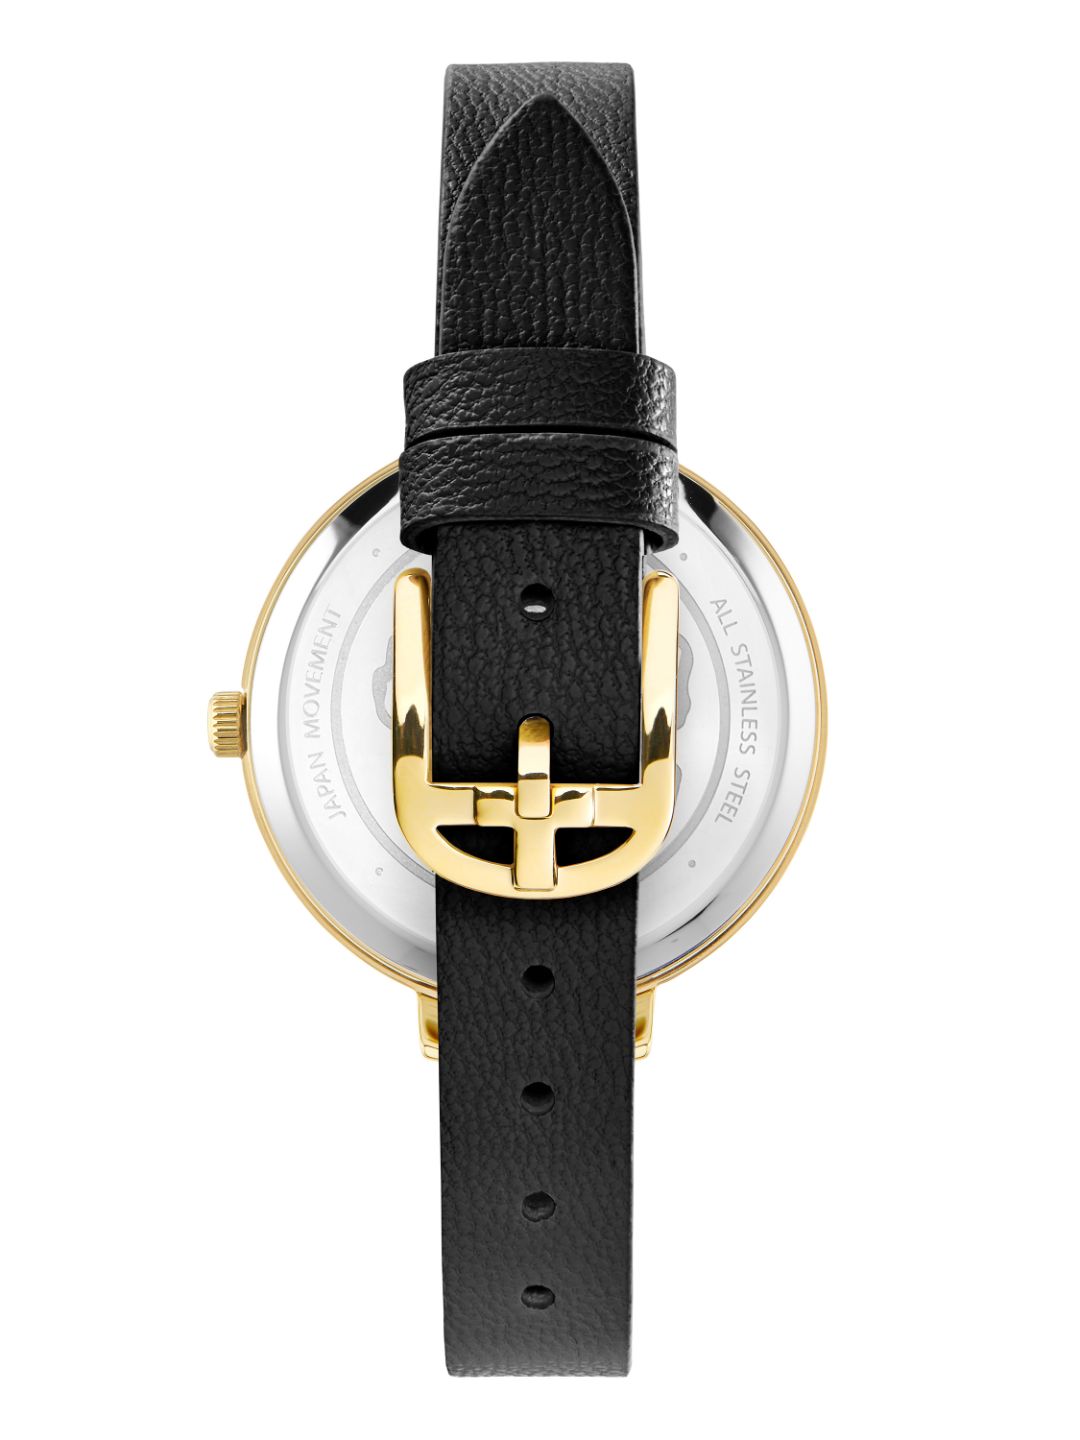 Ted Baker Women Gold-Tone Wrist Watch - BKPDSS300